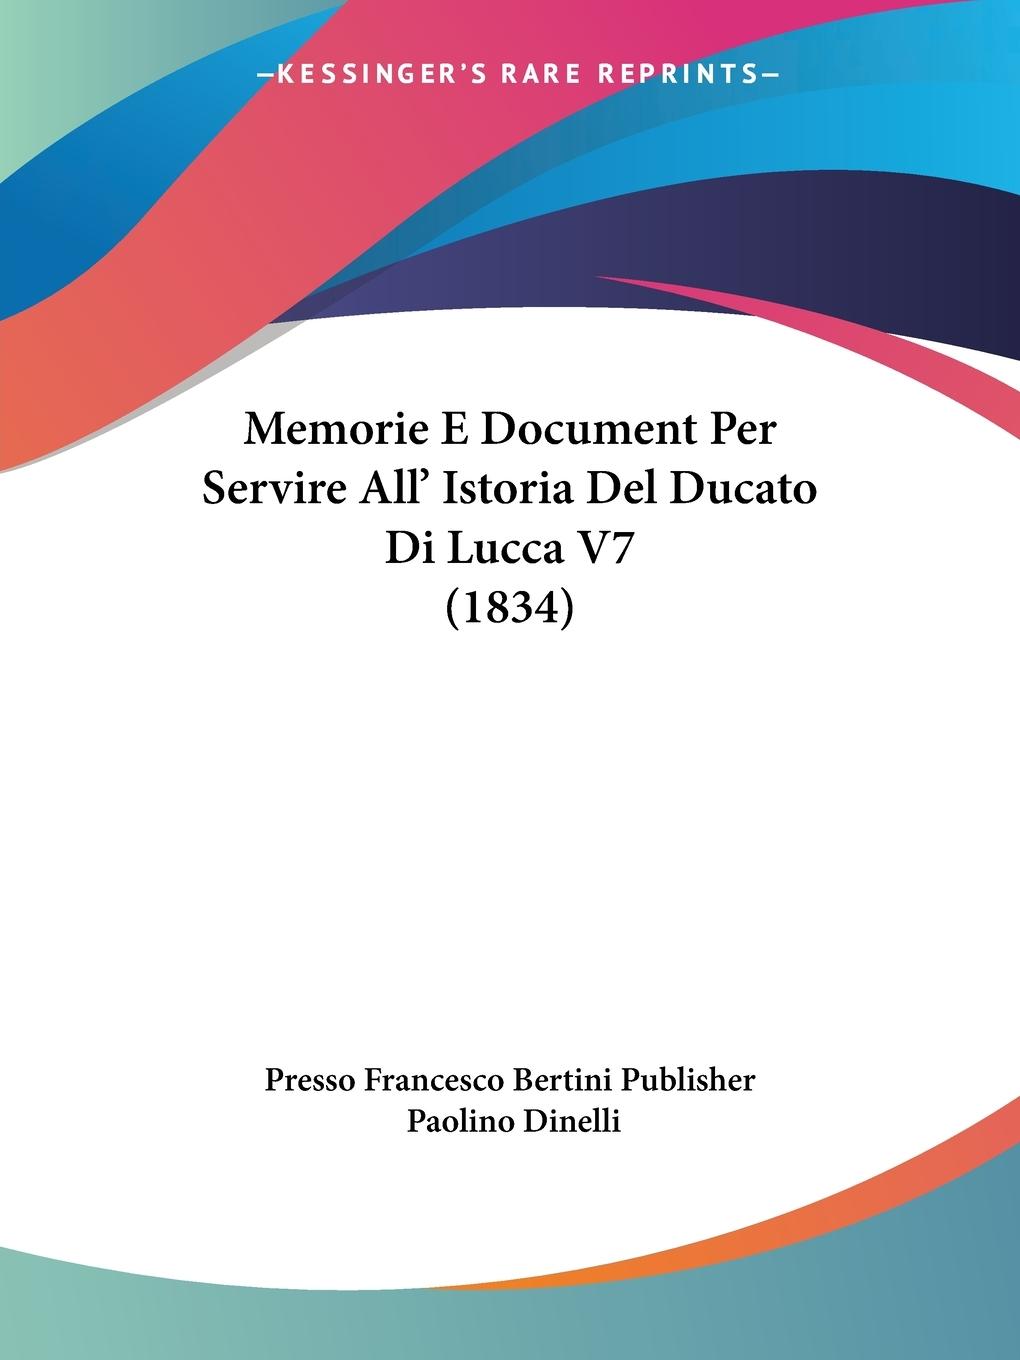 Memorie E Document Per Servire All  Istoria Del Ducato Di Lucca V7 (1834) - Presso Francesco Bertini Publisher Dinelli, Paolino